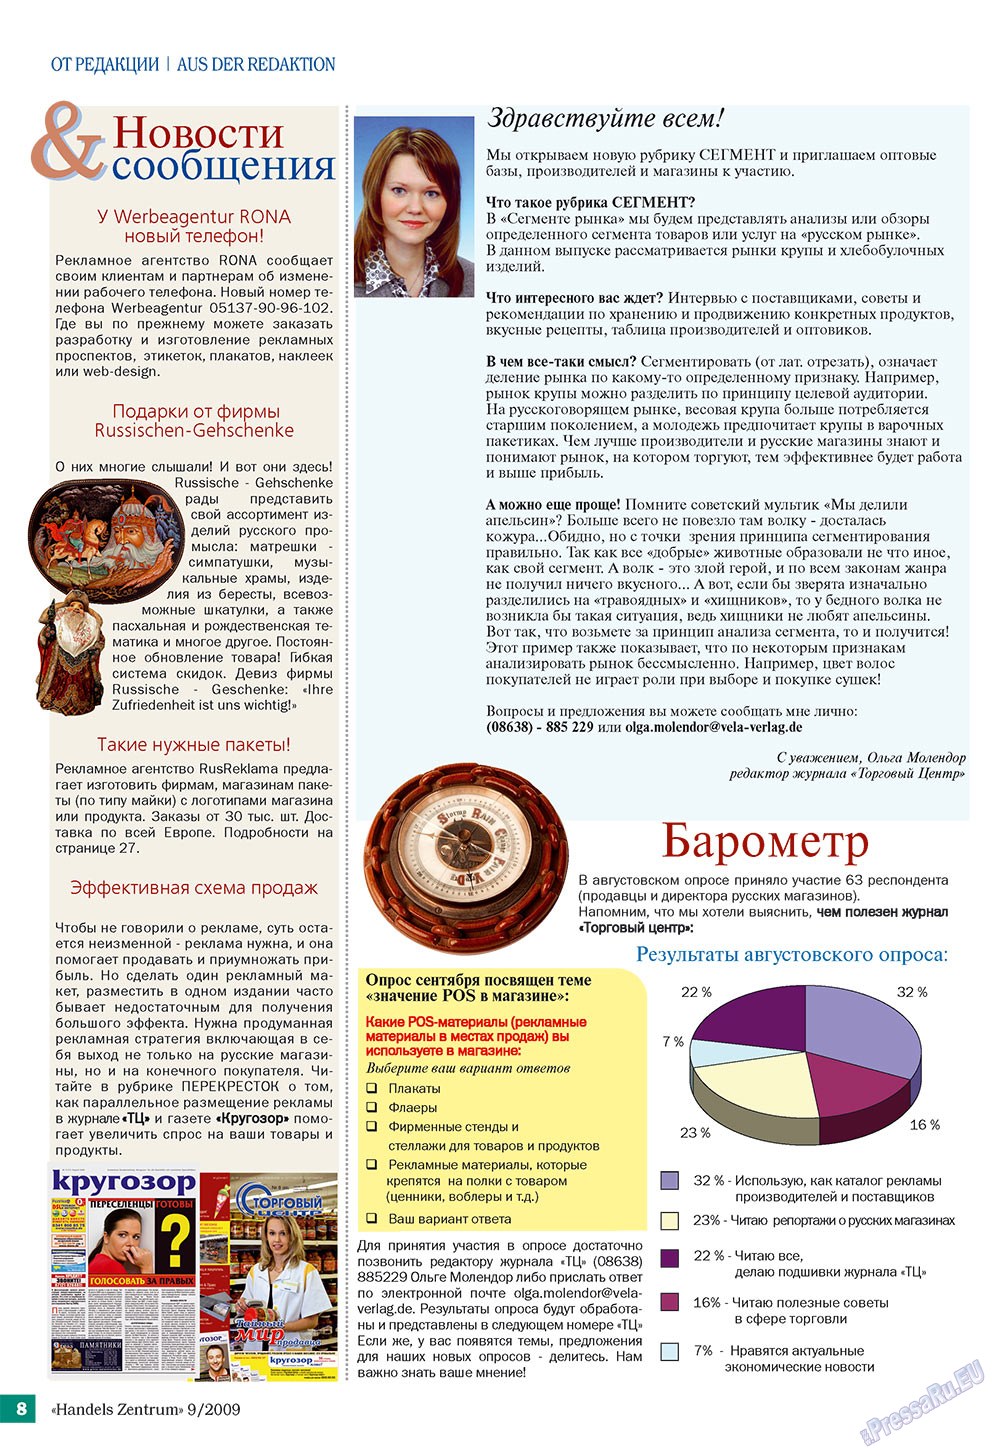 Handels Zentrum (Zeitschrift). 2009 Jahr, Ausgabe 9, Seite 8